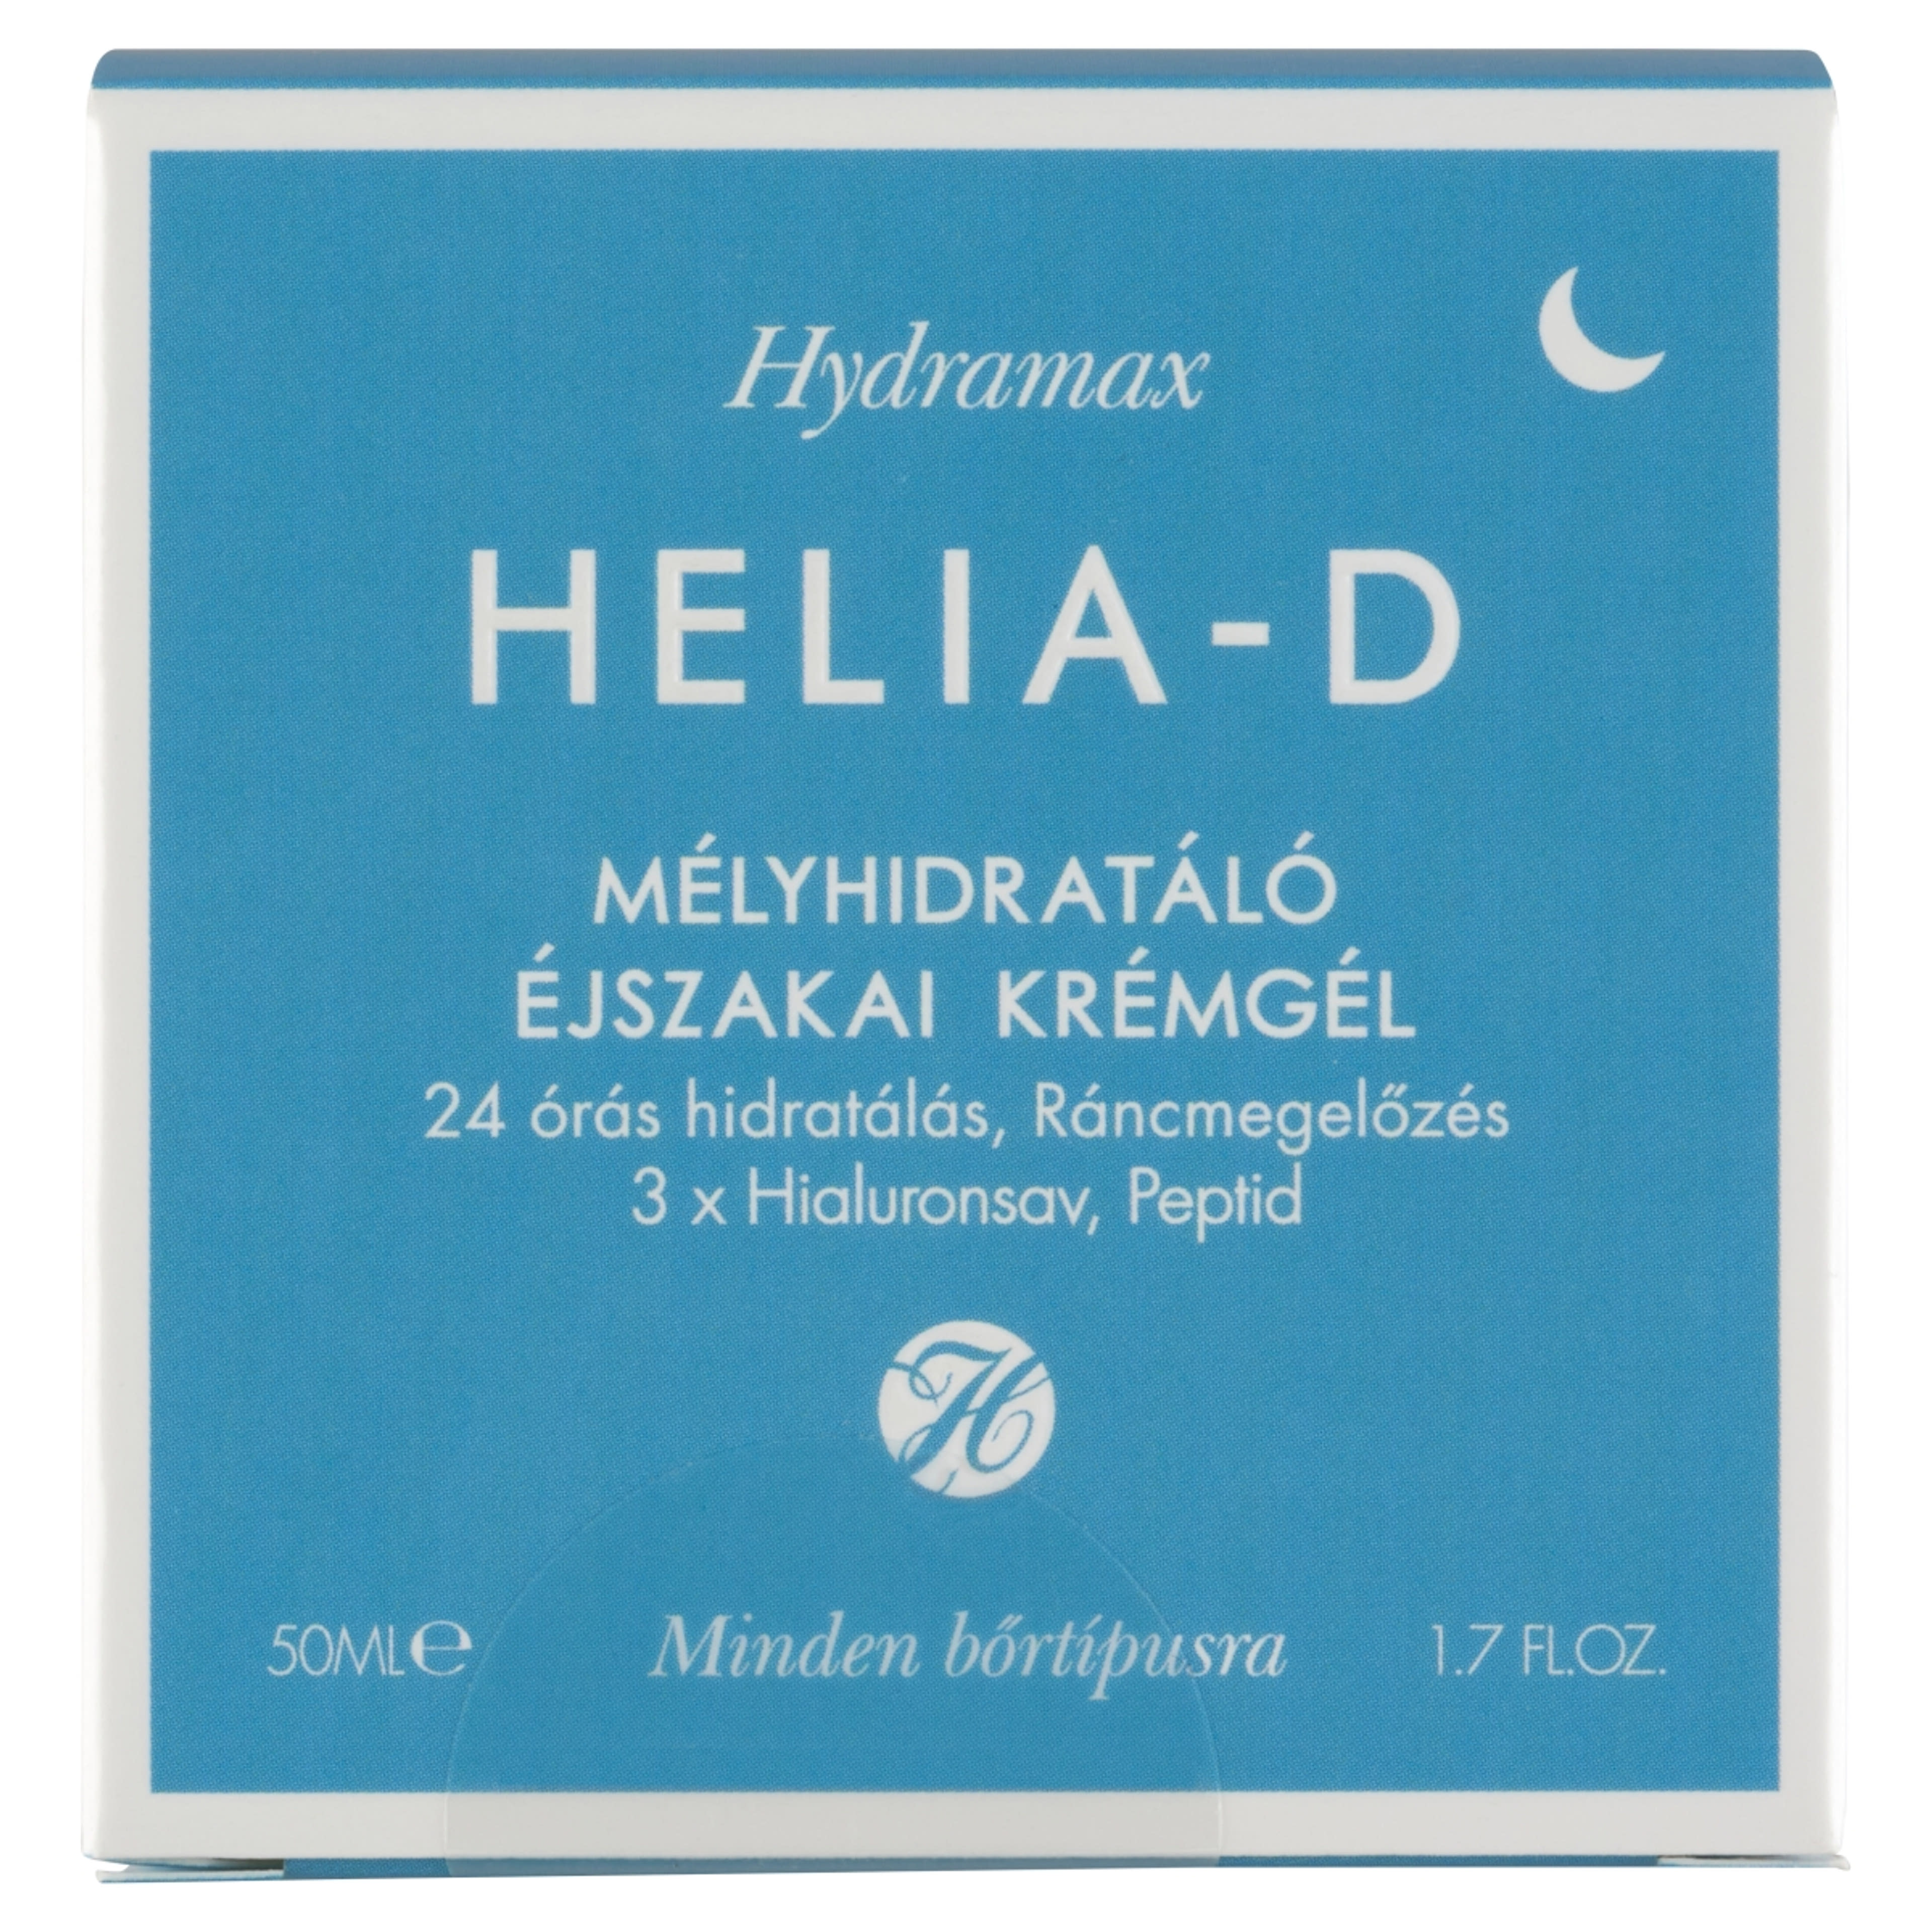 Helia-D Hydramax mélyhidratáló éjszakai krémgél - 50 ml